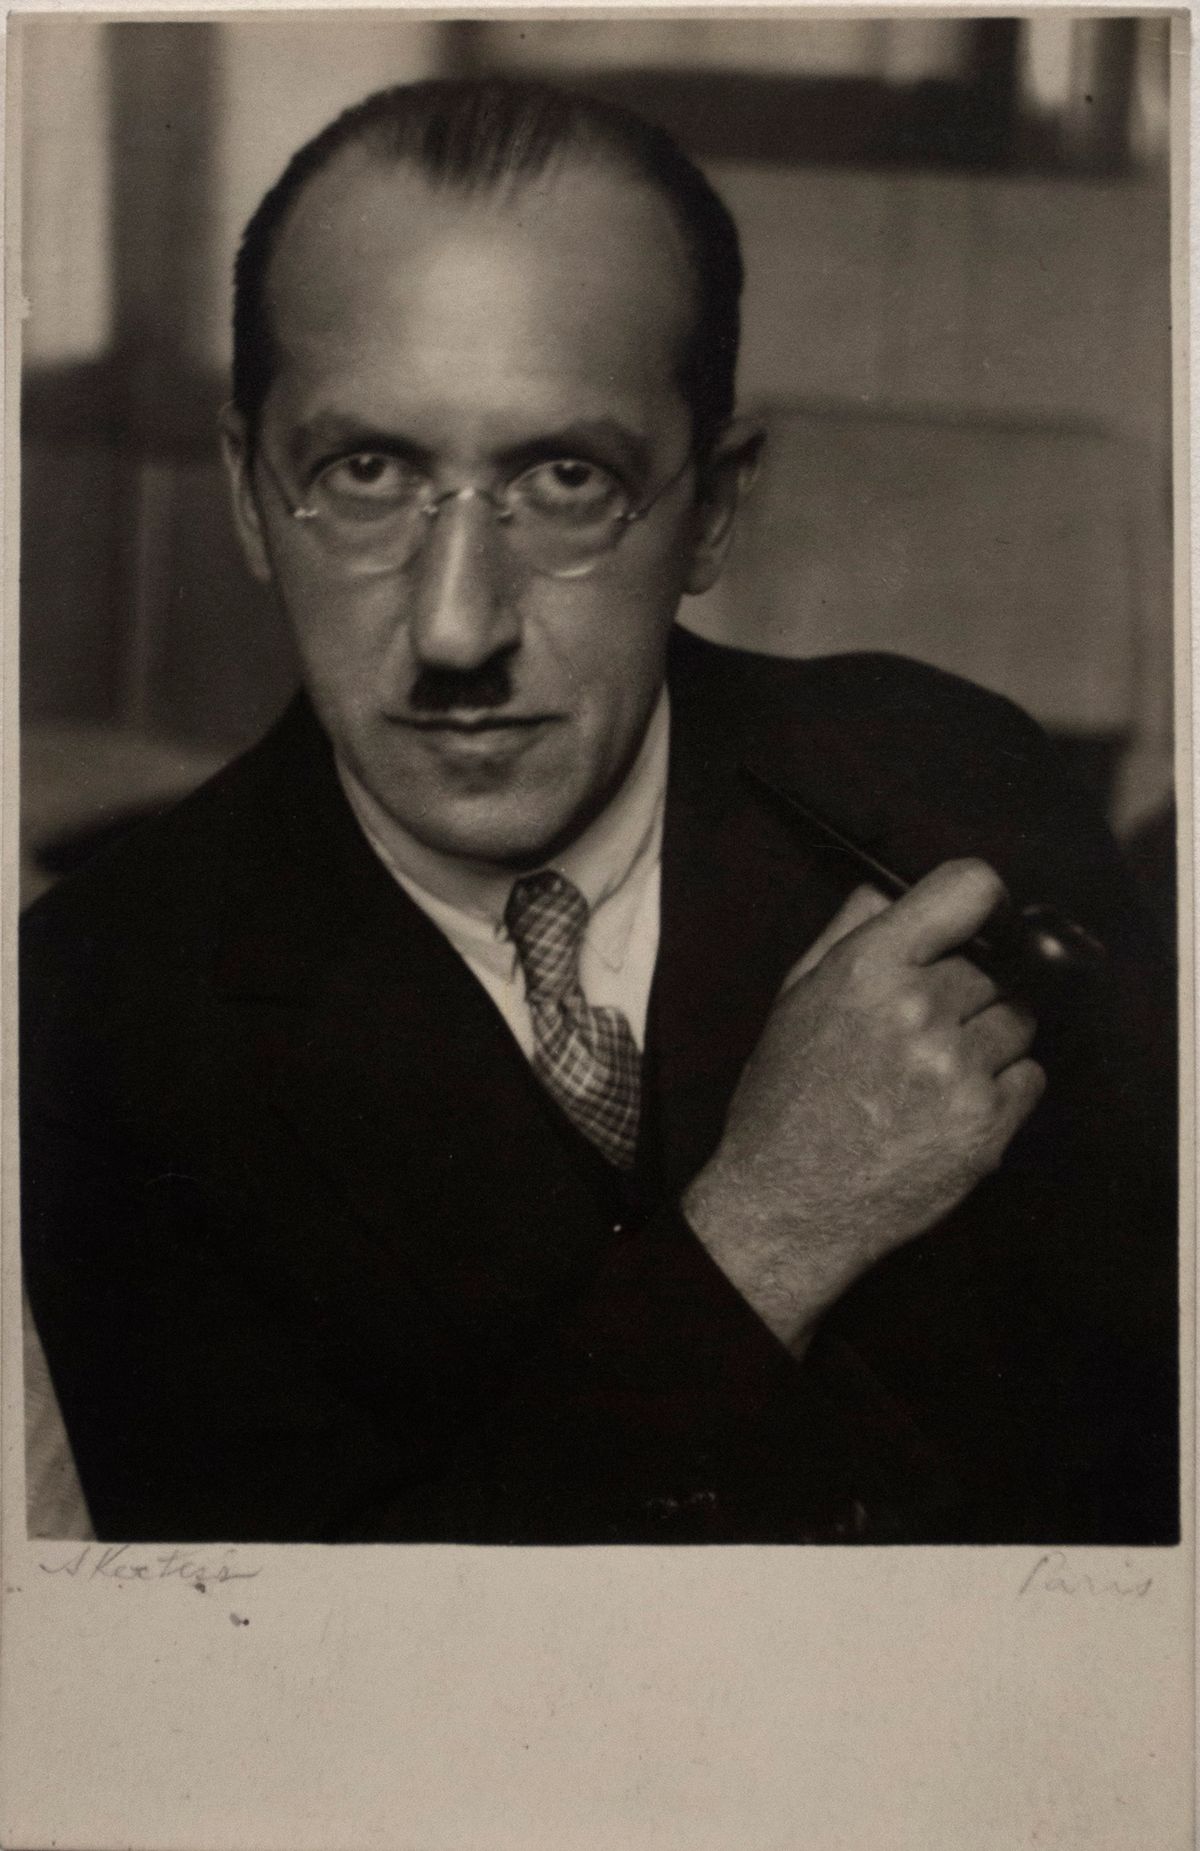 Piet Mondrian, 1926 by André Kertész | Ocula